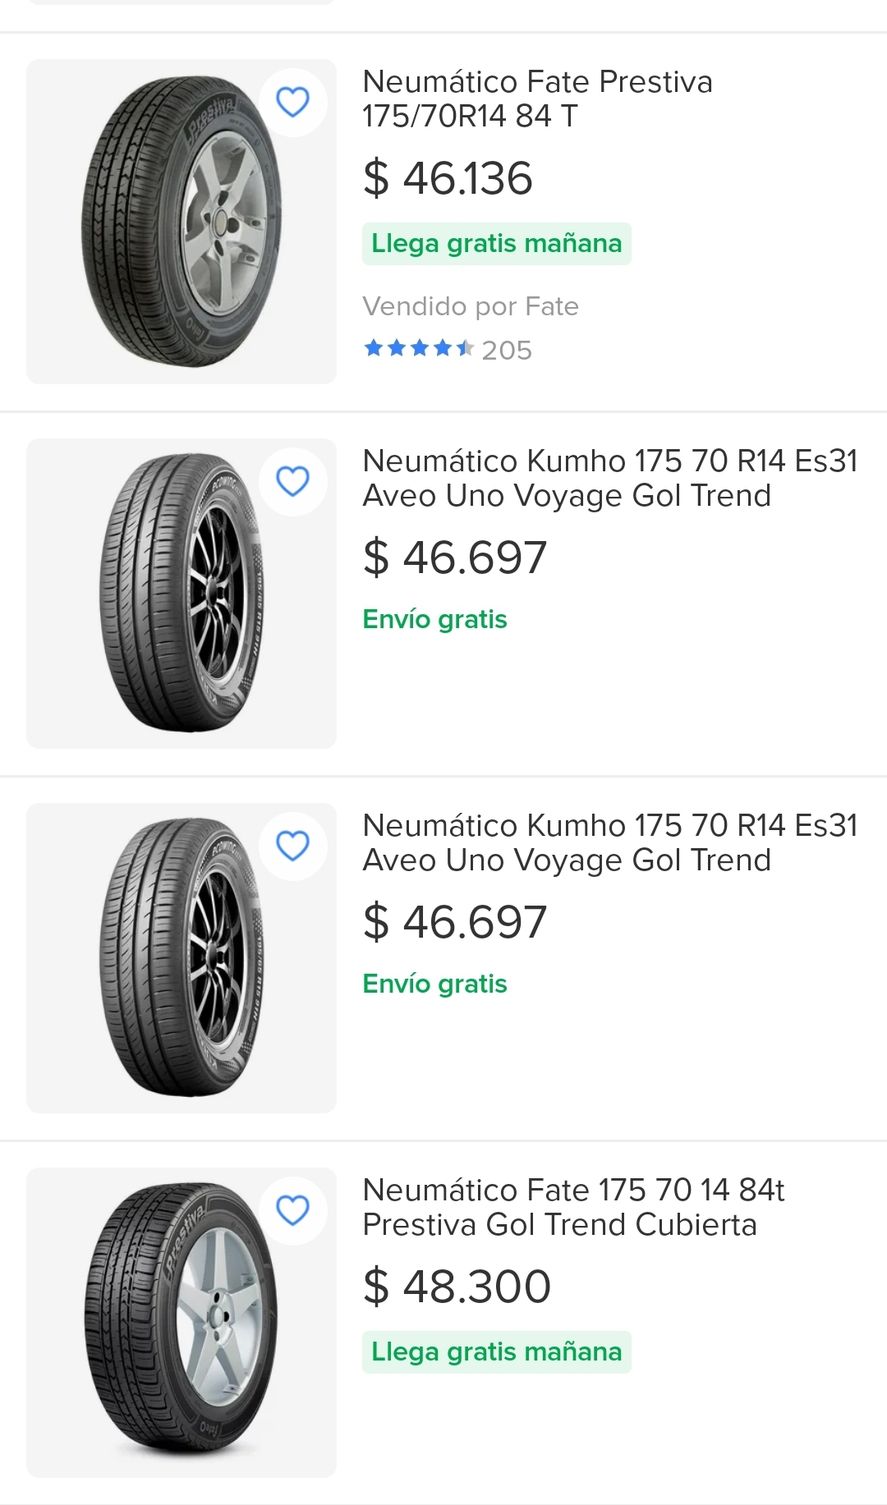 hierro fiesta Diagnosticar La paradoja de comprar neumáticos más baratos en Uruguay | Infocielo